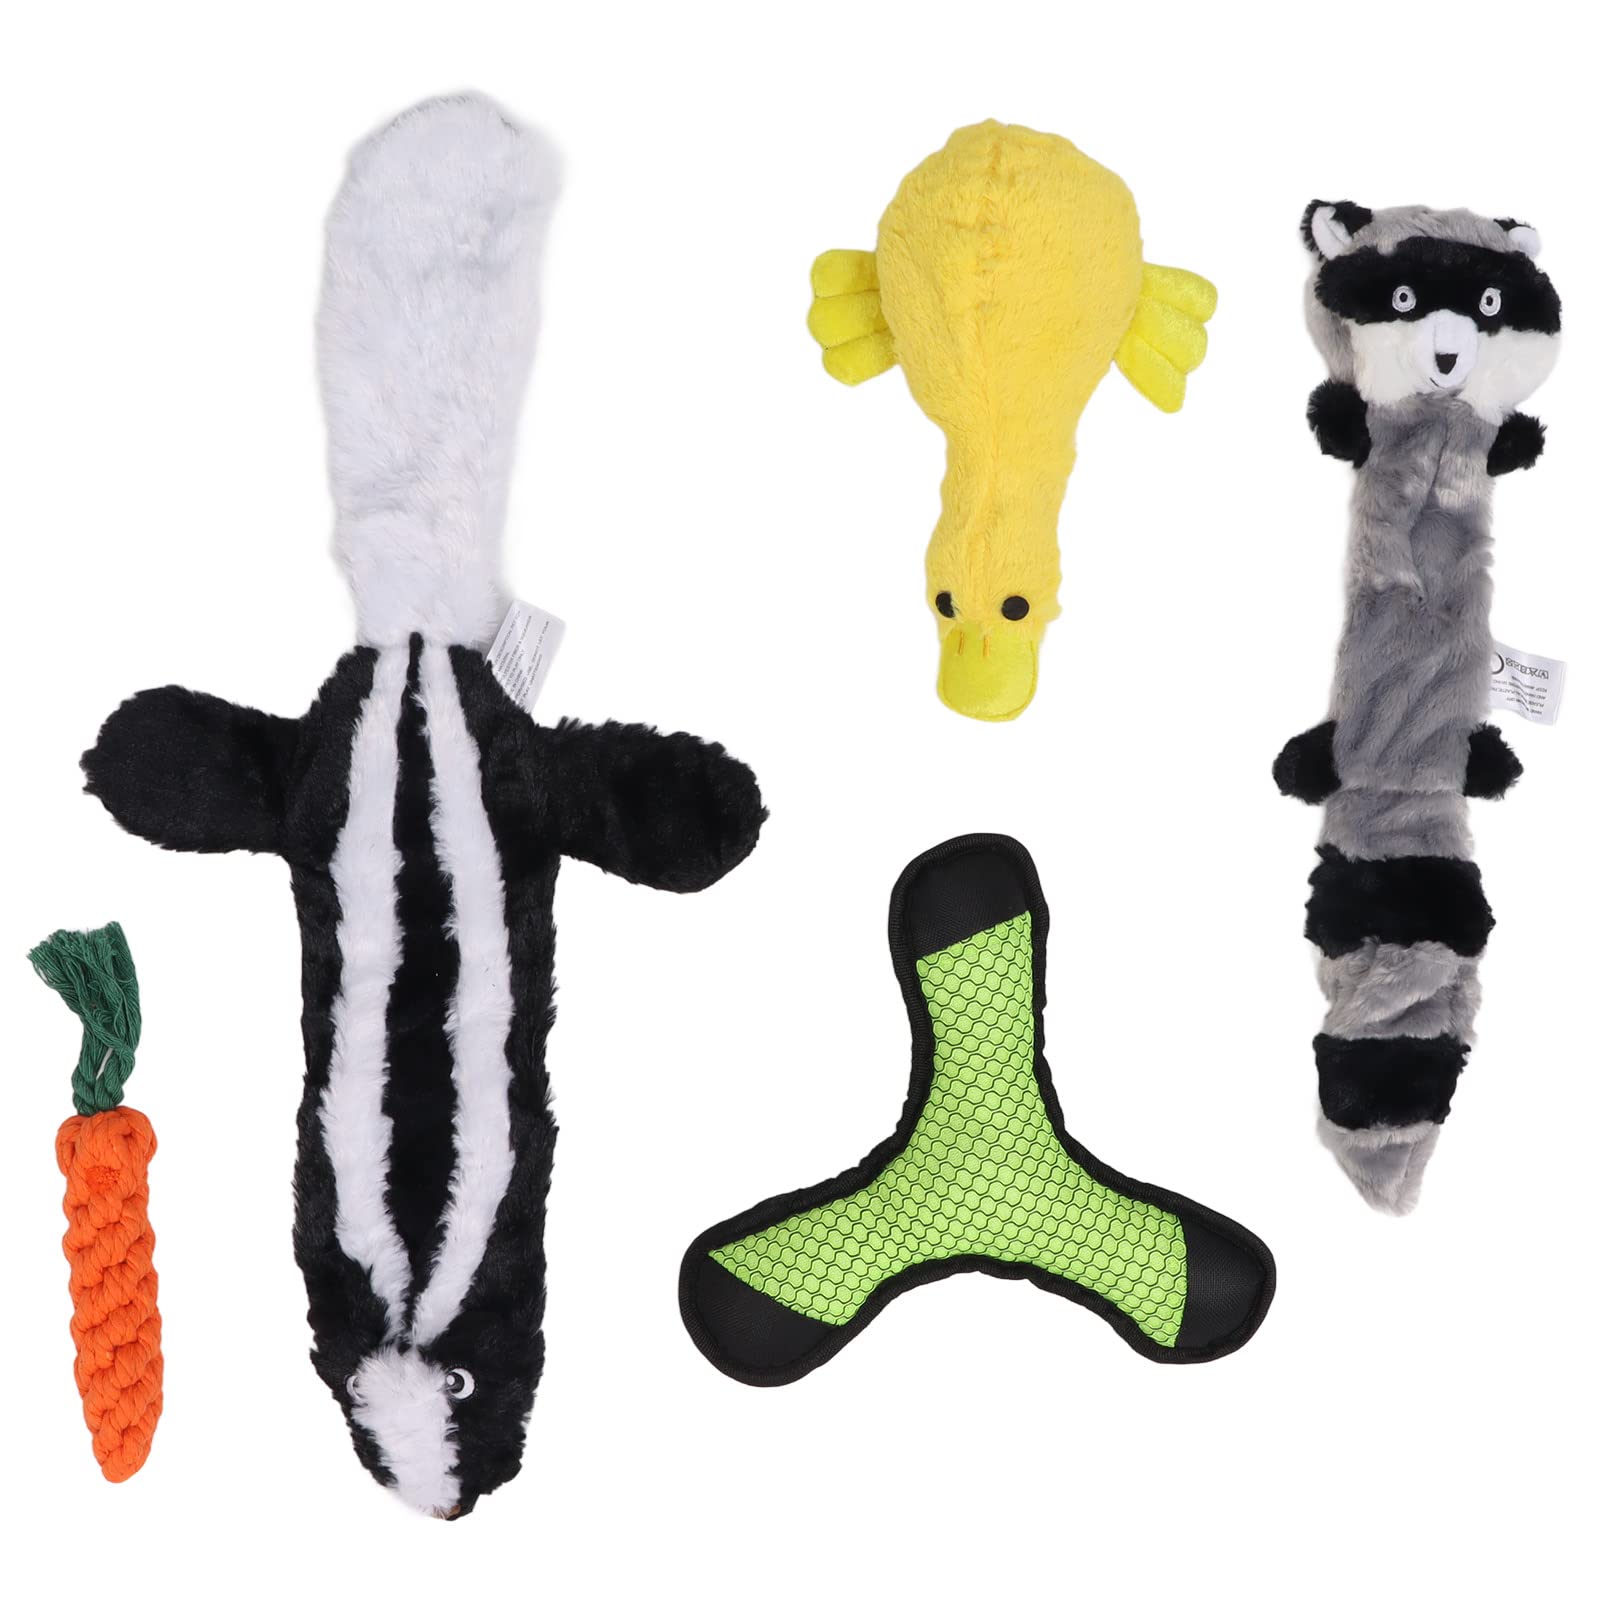 Hunde-Quietschspielzeug, 5 Stück Plüsch-Hundespielzeug Quietsche-Plüsch-Hundespielzeug Durable Chew Dog Toys Interaktives Plüschhundespielzeug für Welpen Kleine HaustiereKauspielzeug